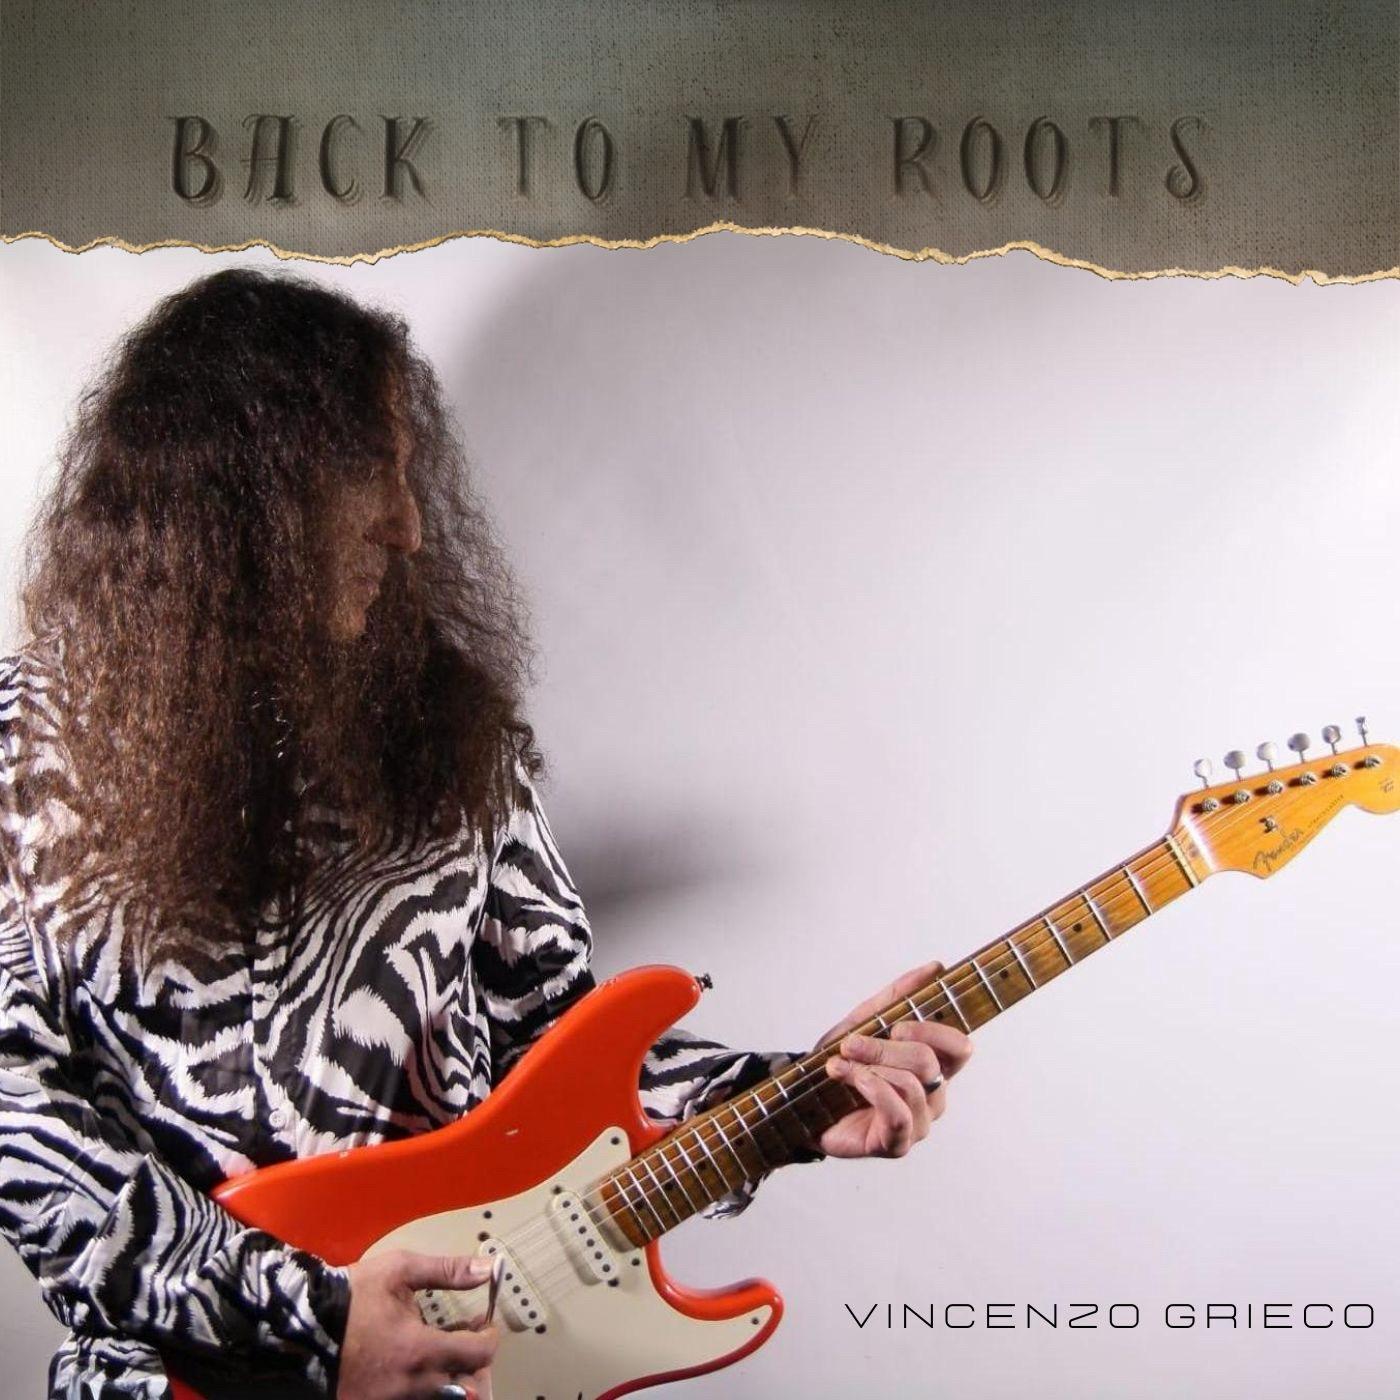 Esce oggi, 20 Marzo il nuovo capolavoro chitarristico targato Vincenzo Grieco “Back To My Roots”